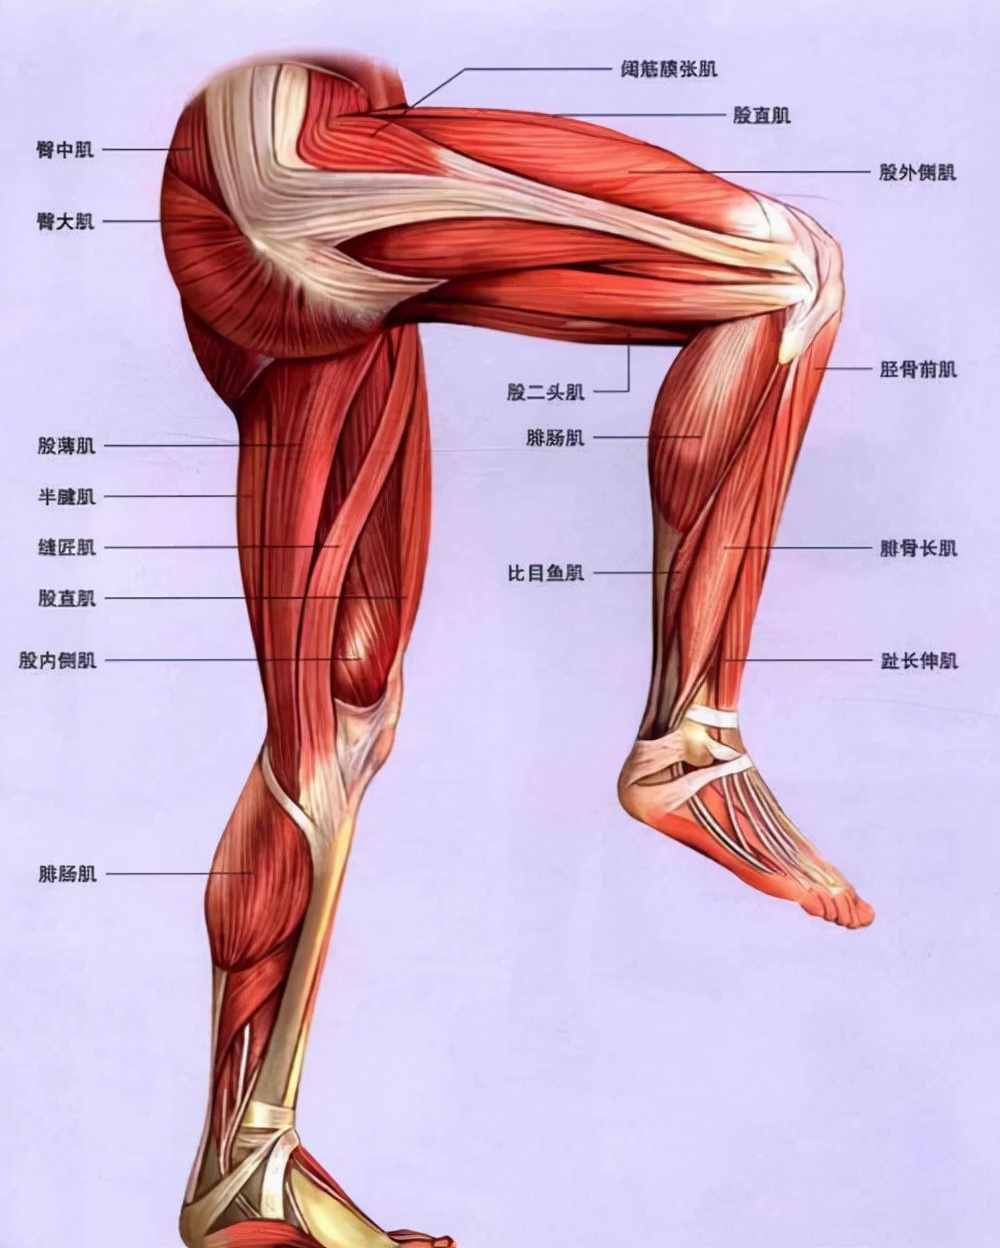 腿部是身体最大的一个肌群,男生练腿不但可以强壮下肢,促进睾酮分泌